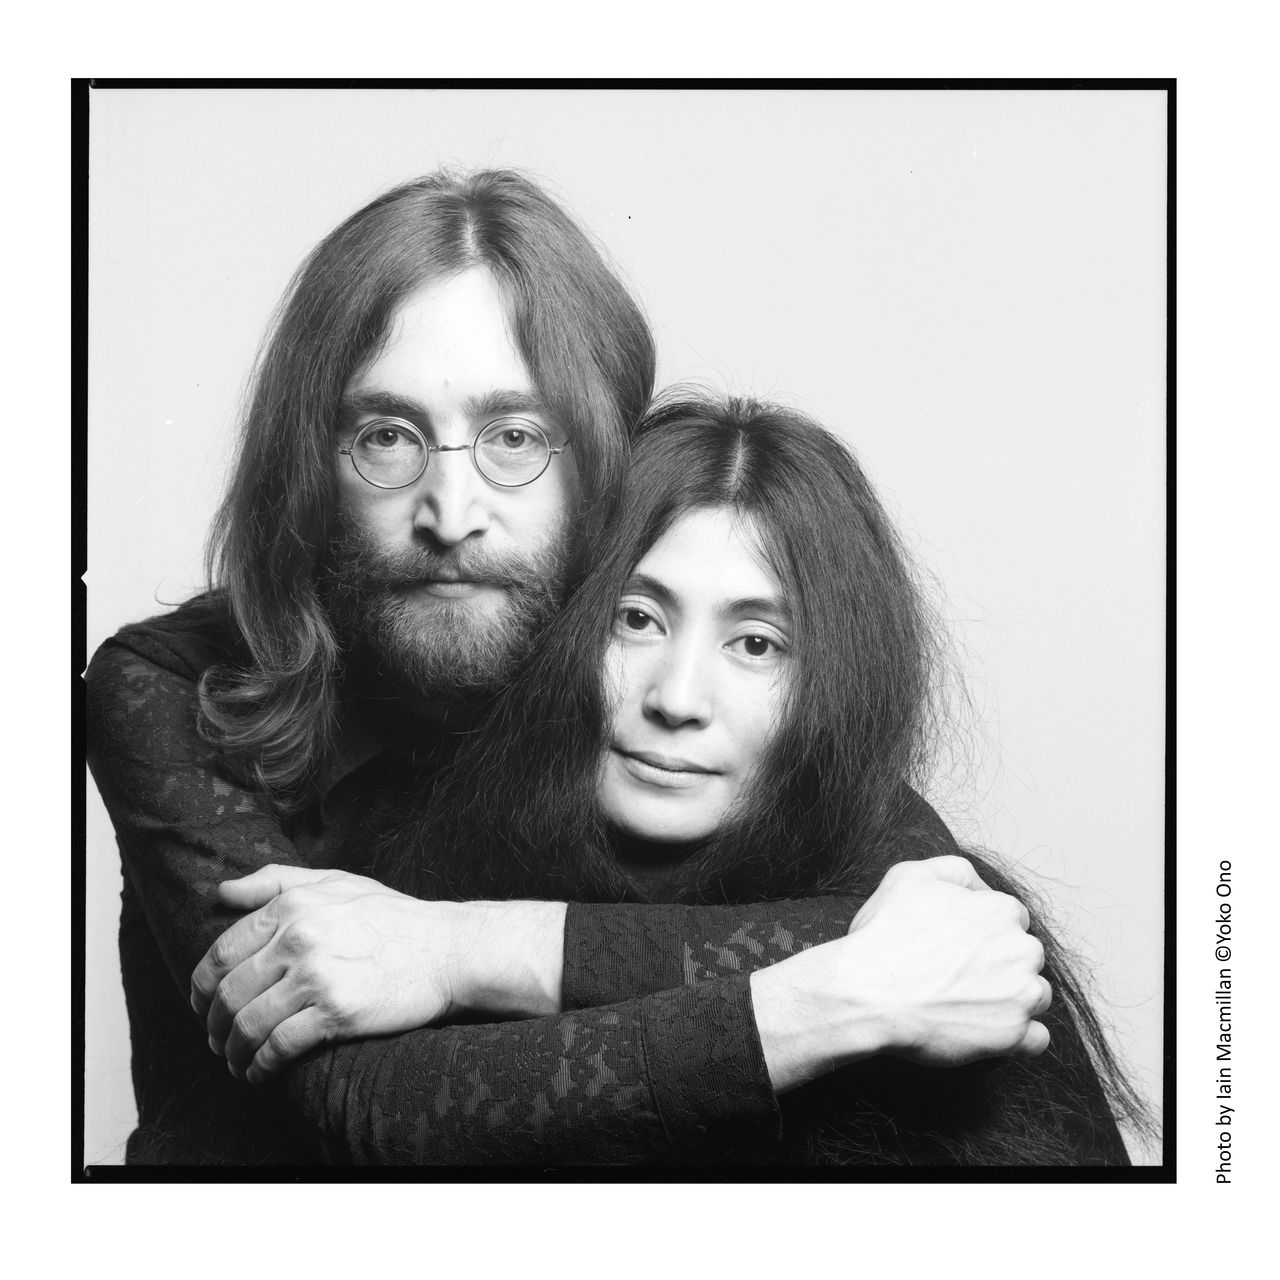 L’exposition « DOUBLE FANTASY – John & Yoko », actuellement visible à Tokyo, a attiré 700 000 visiteurs à Liverpool. Un volet propre à l’exposition de Tokyo, baptisé « Japan Exclusive », montre une collection d’objets soulignant le lien entre Lennon et le Japon.